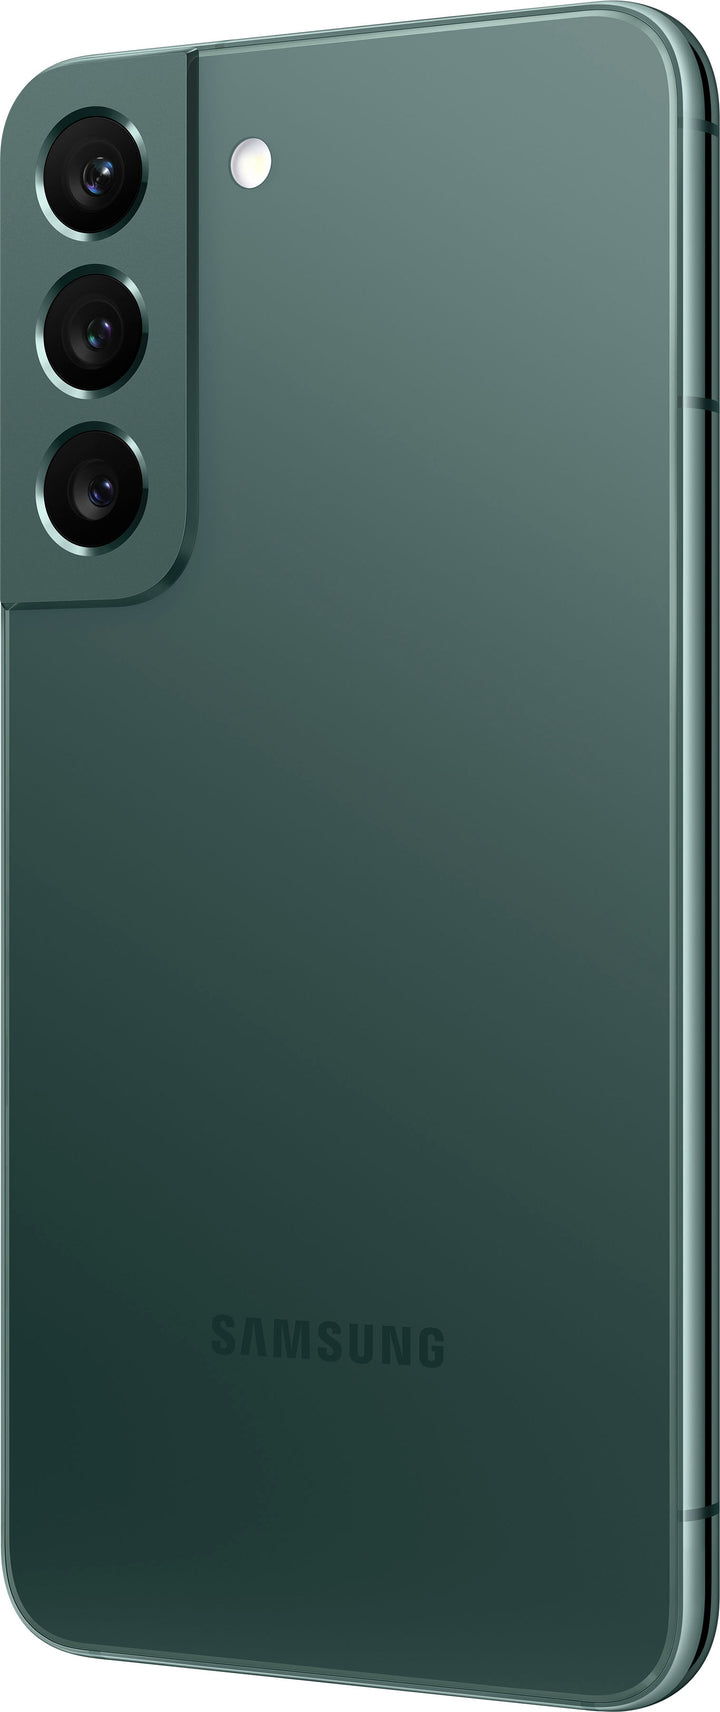 Samsung - Galaxy S22 128GB - Green (Verizon)_2